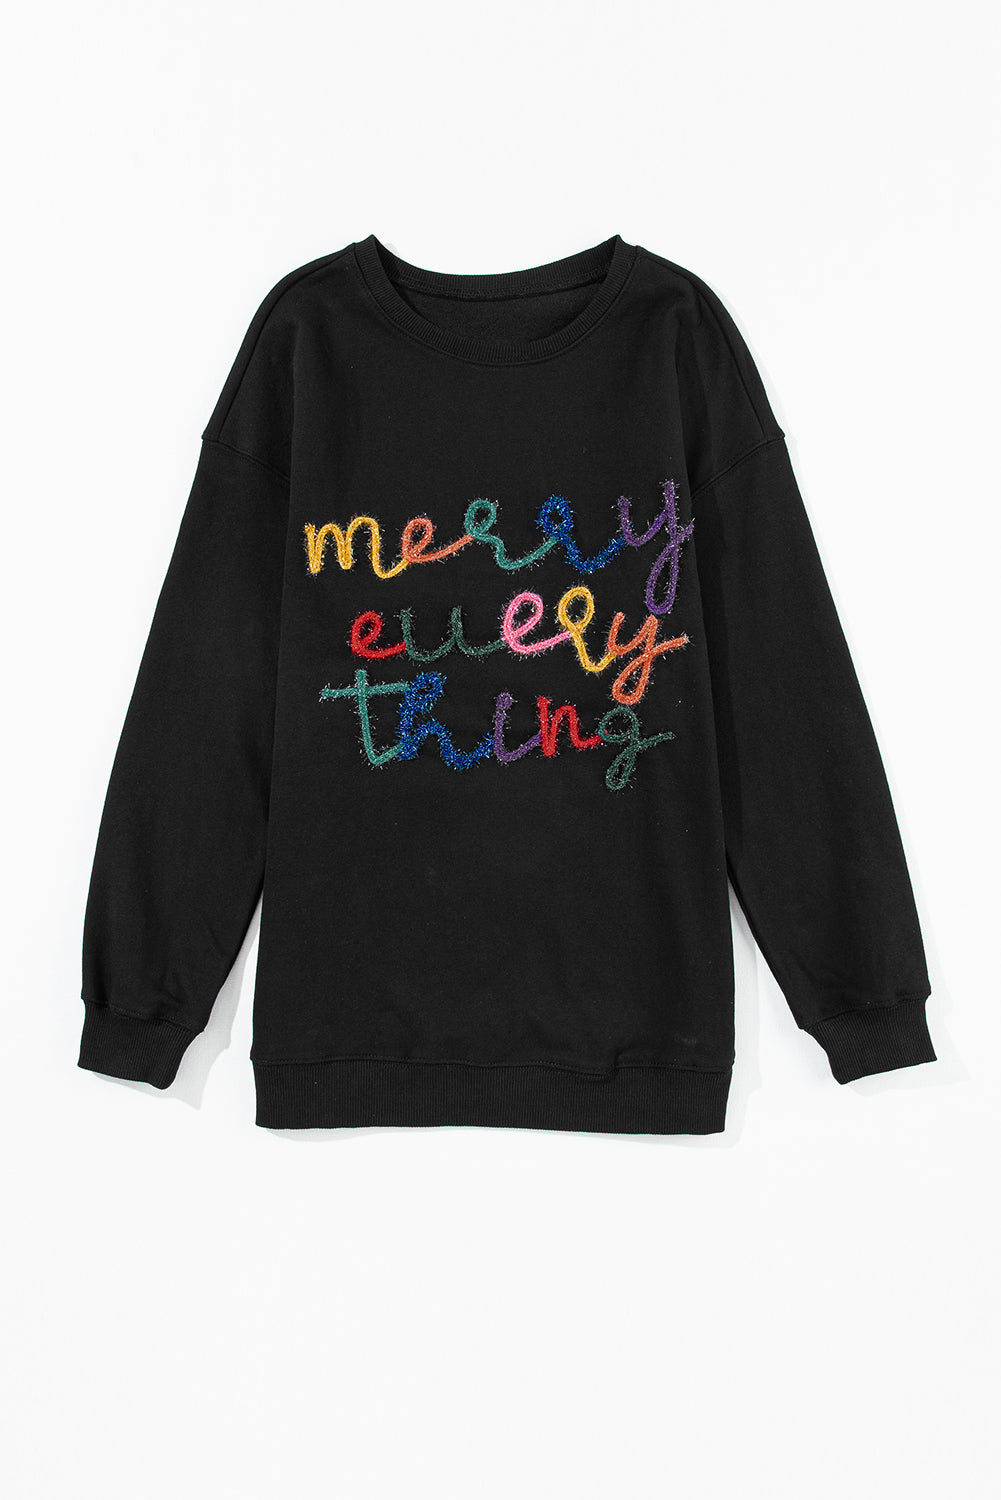 Sweat-shirt noir à slogan « Merry Every Thing Tinsel »